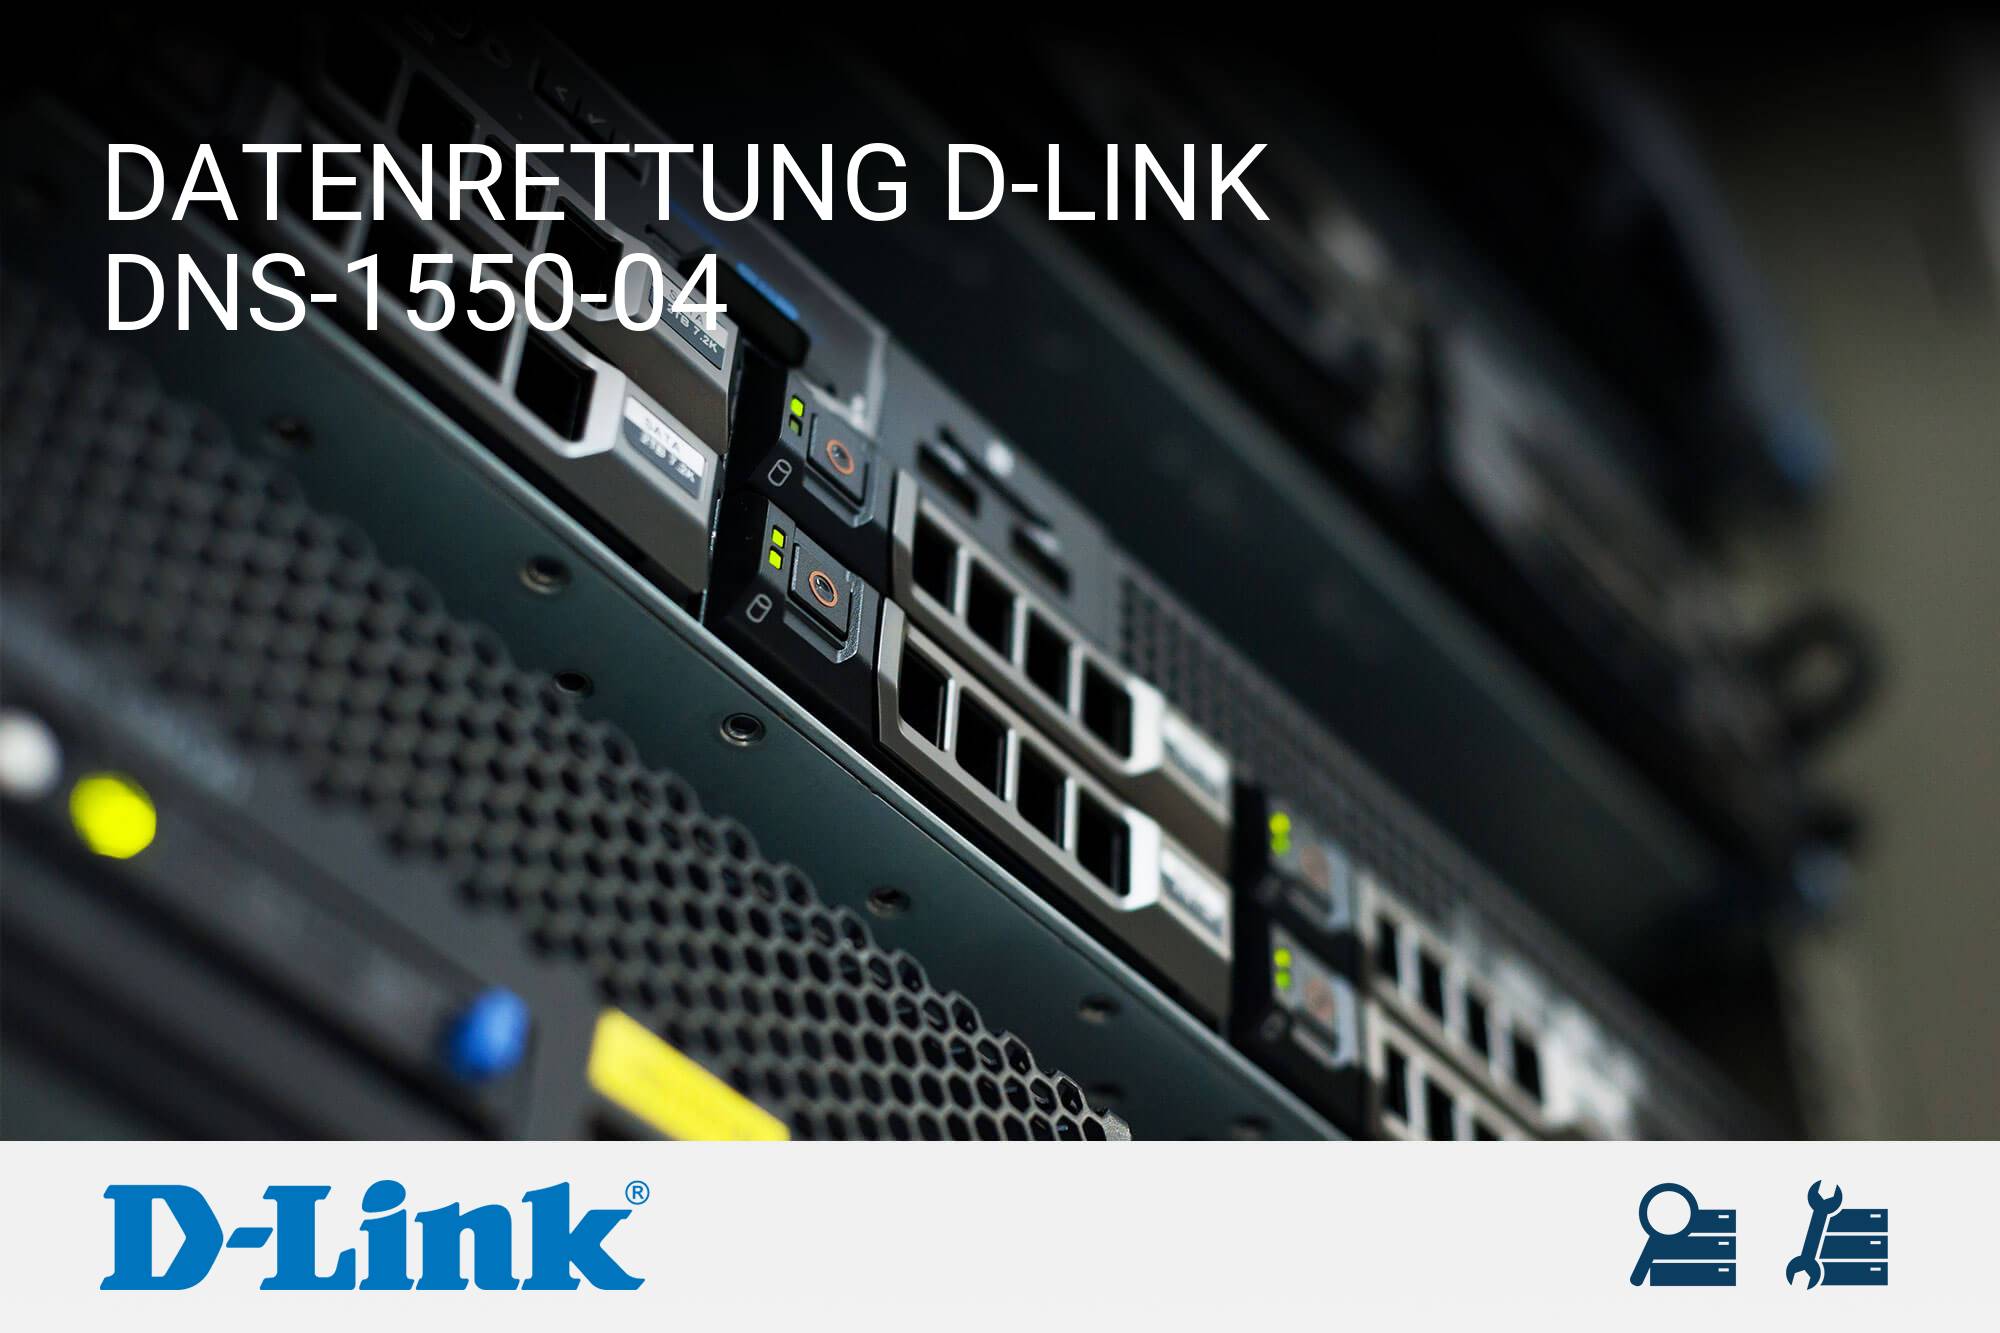 D-Link DNS-1550-04